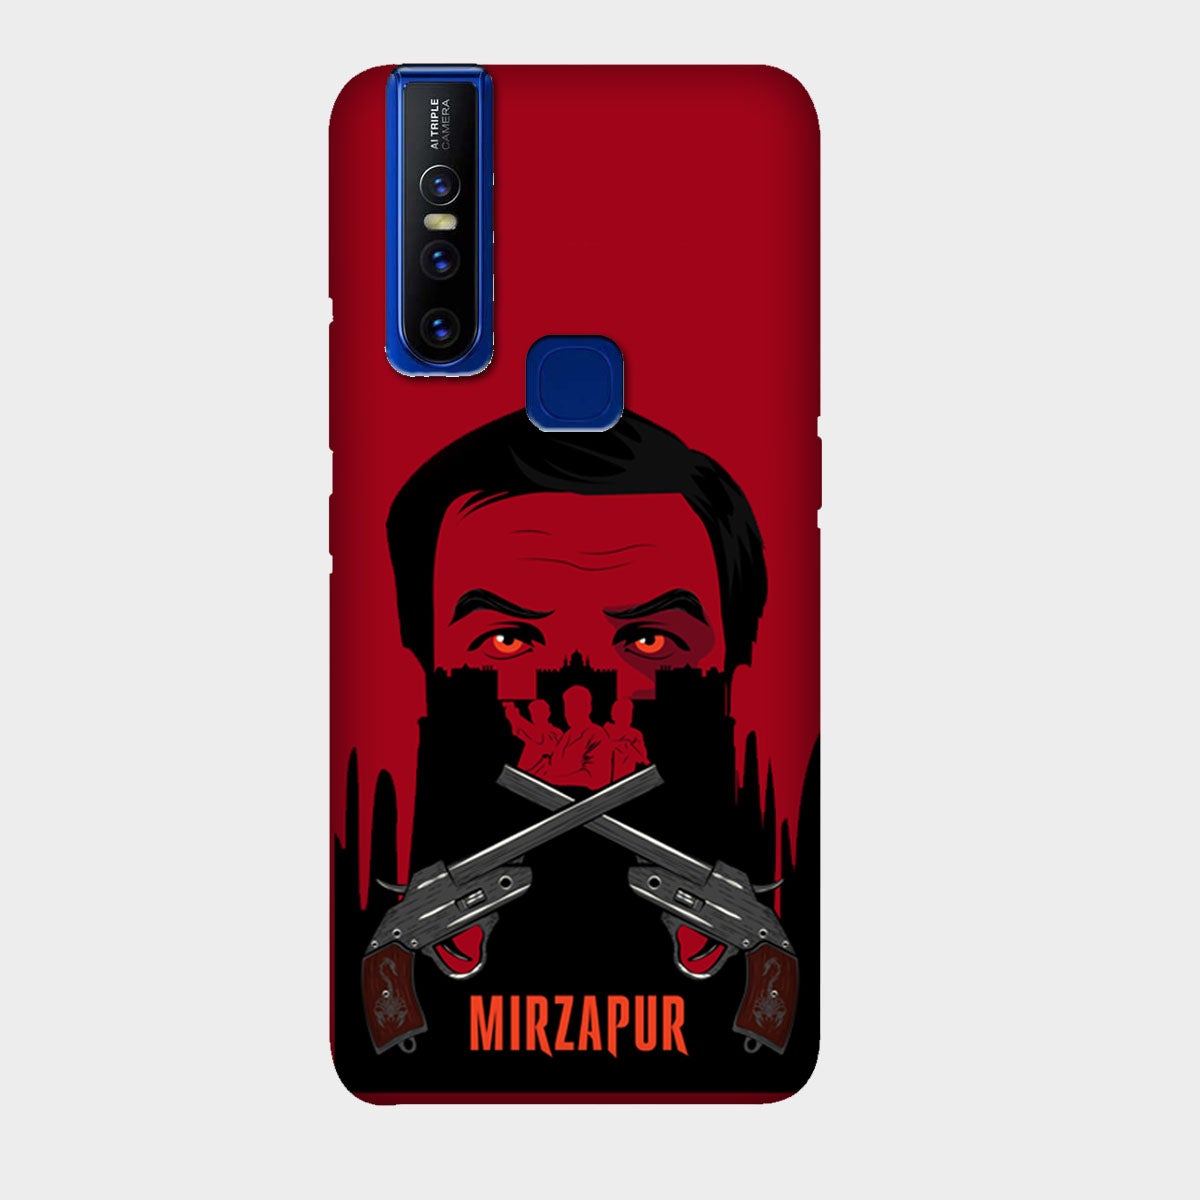 Mirzapur - Mobile Phone Cover - Hard Case - Vivo